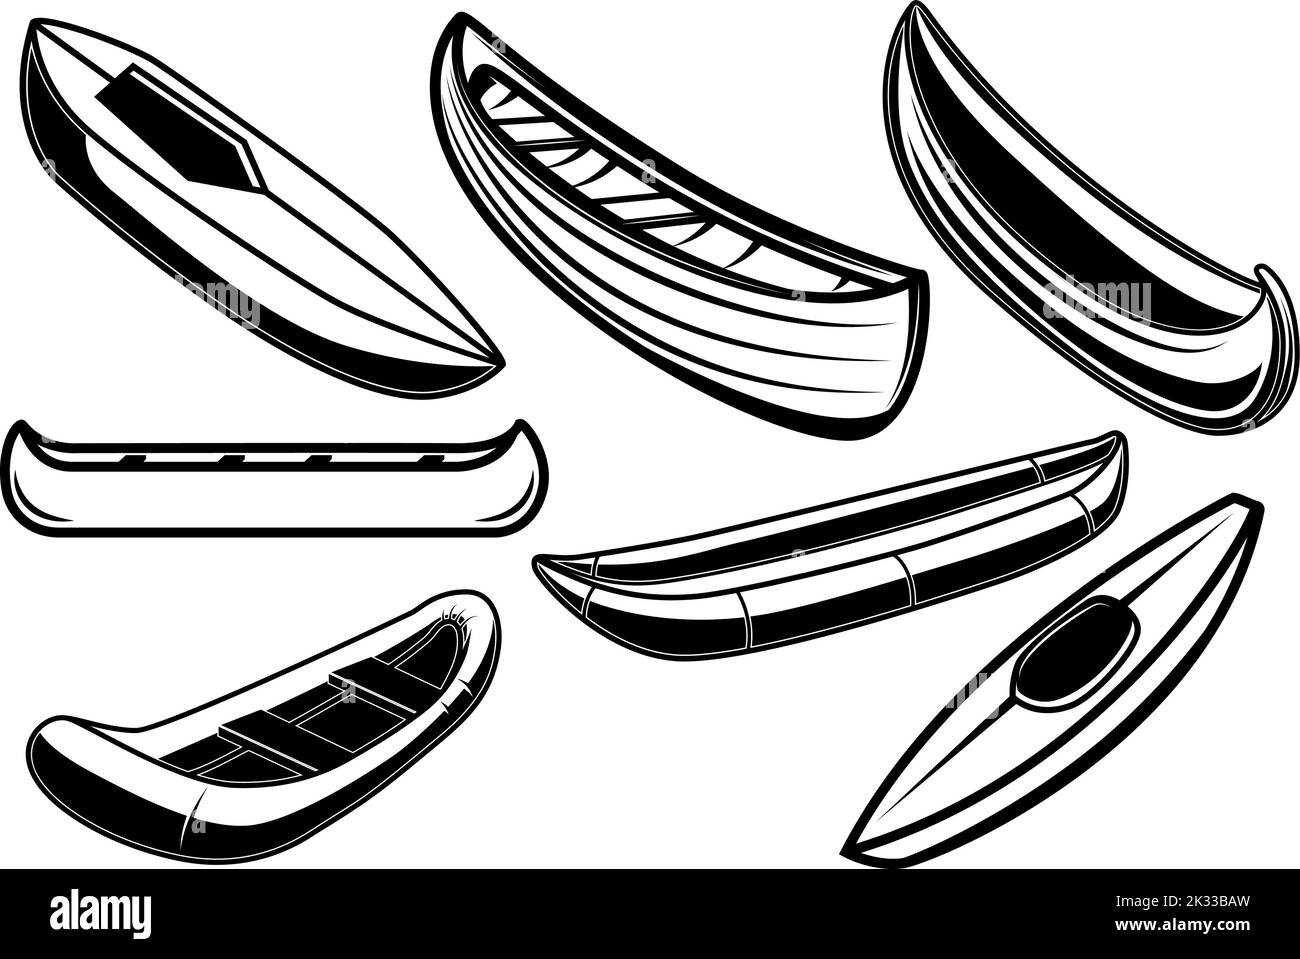 Ensemble d'illustrations de kayak, canoë, bateaux. Élément de conception pour affiche, carte, bannière, panneau, logo. Illustration vectorielle Illustration de Vecteur